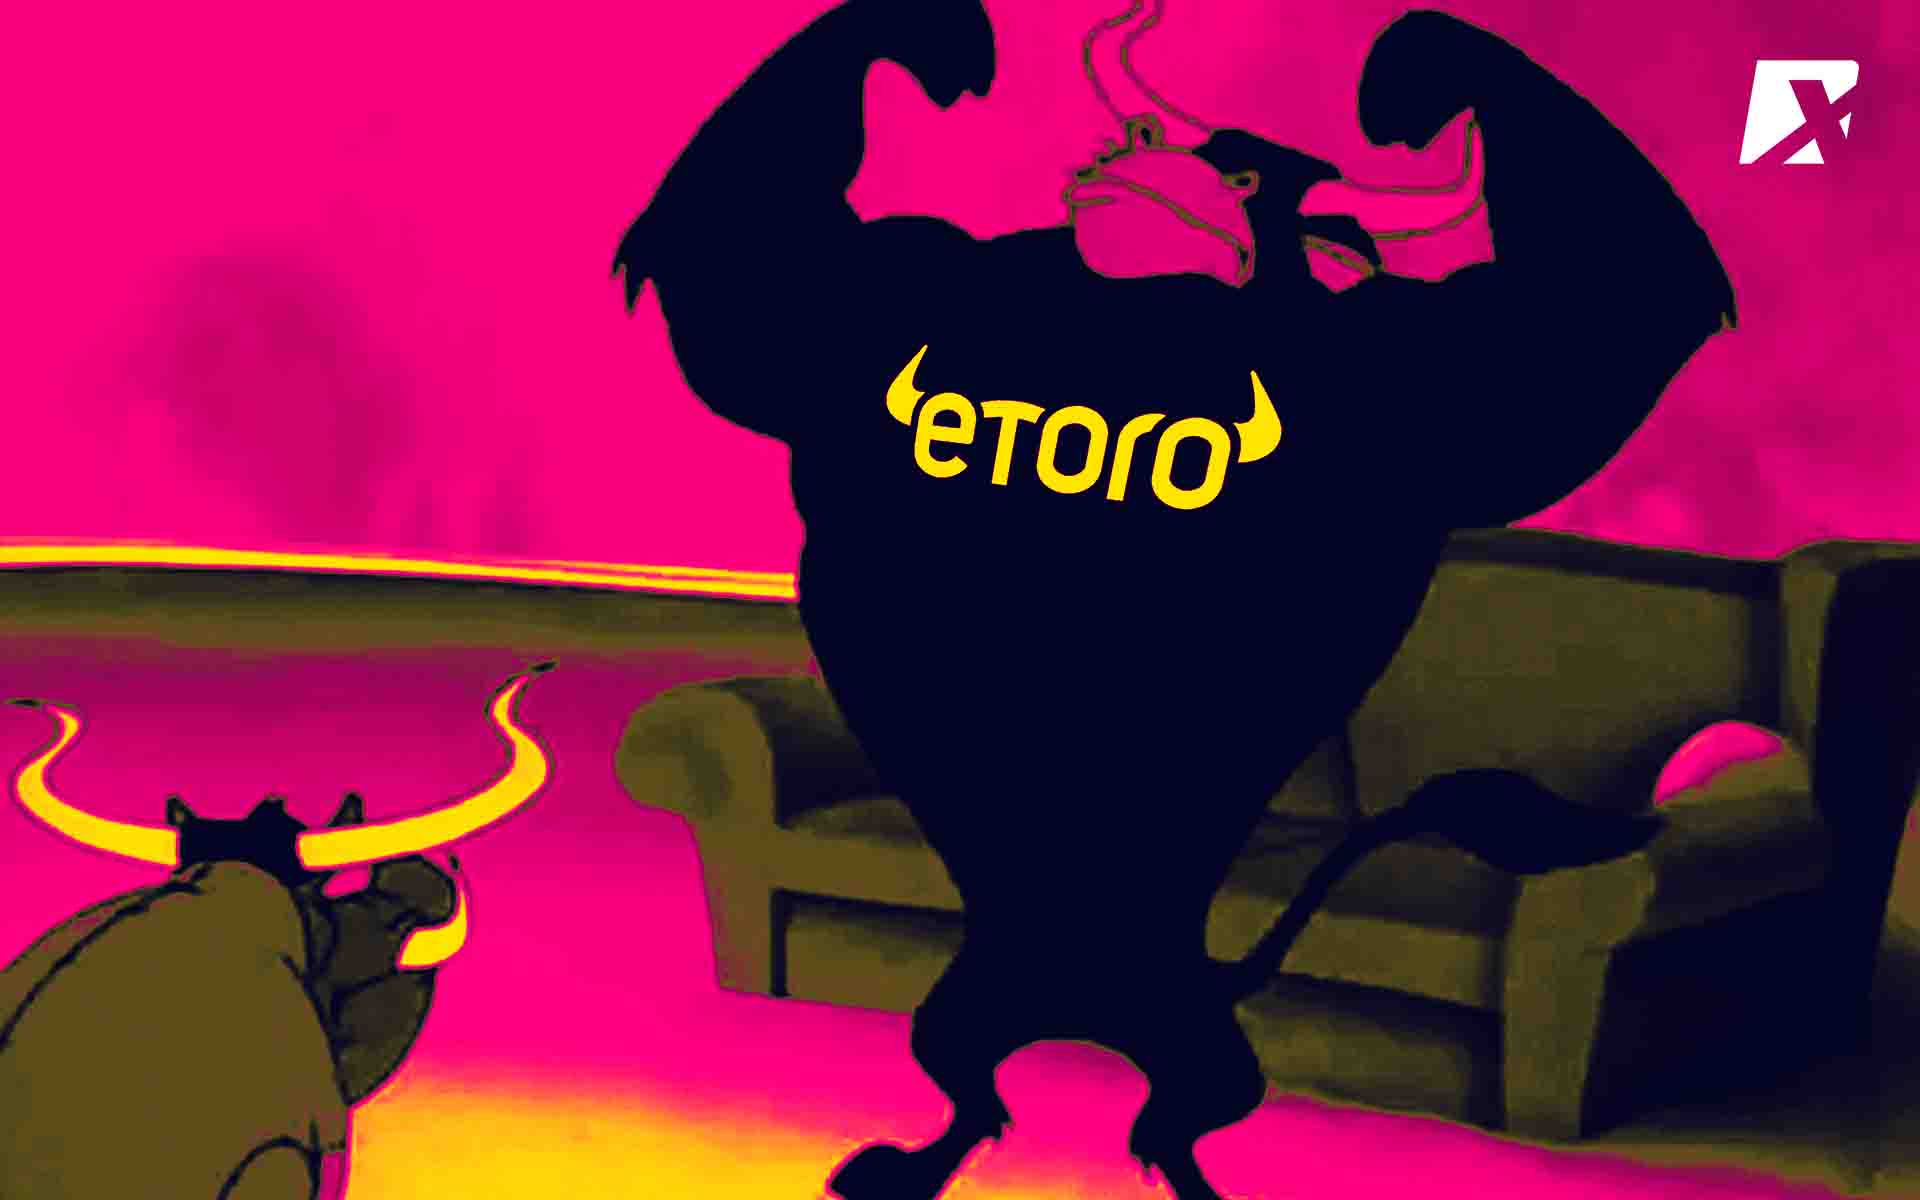 Hướng dẫn tạo tài khoản eToro, xác minh danh tính, bảo mật hai lớp và active chức năng Copy trading